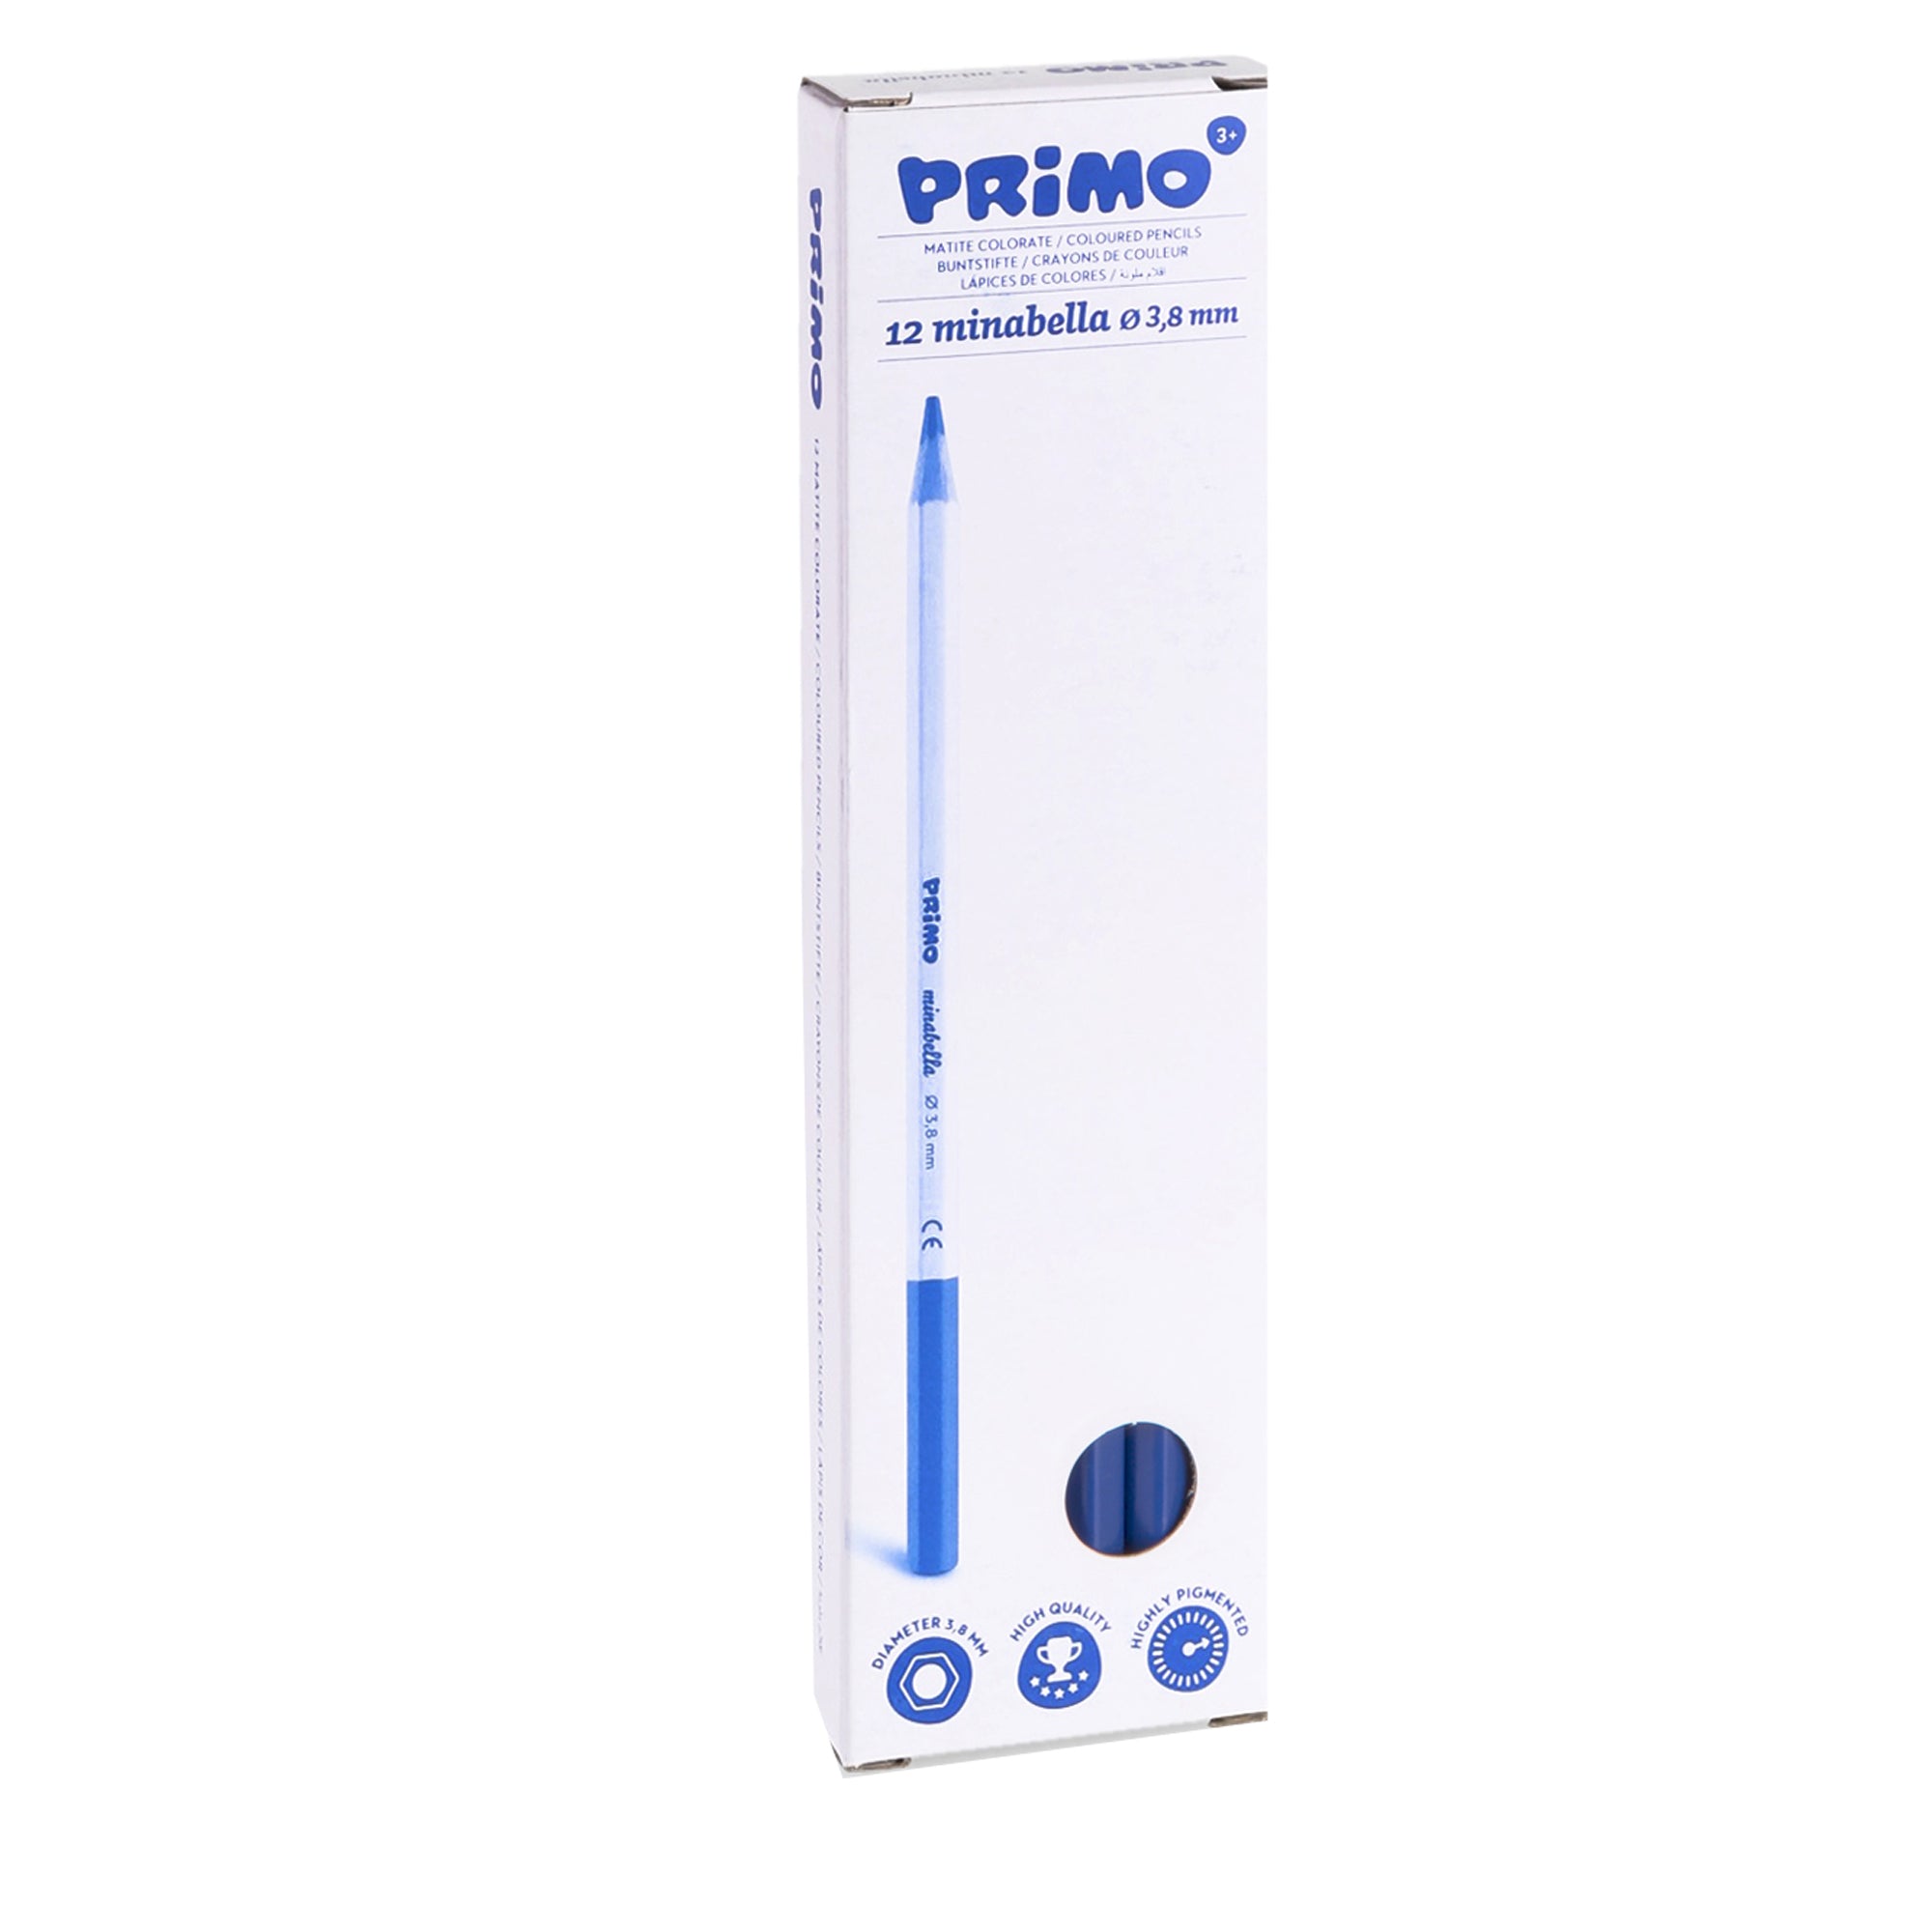 primo-morocolor-pastello-minabella-blu-cobalto-540-diam-3-8mm-primo